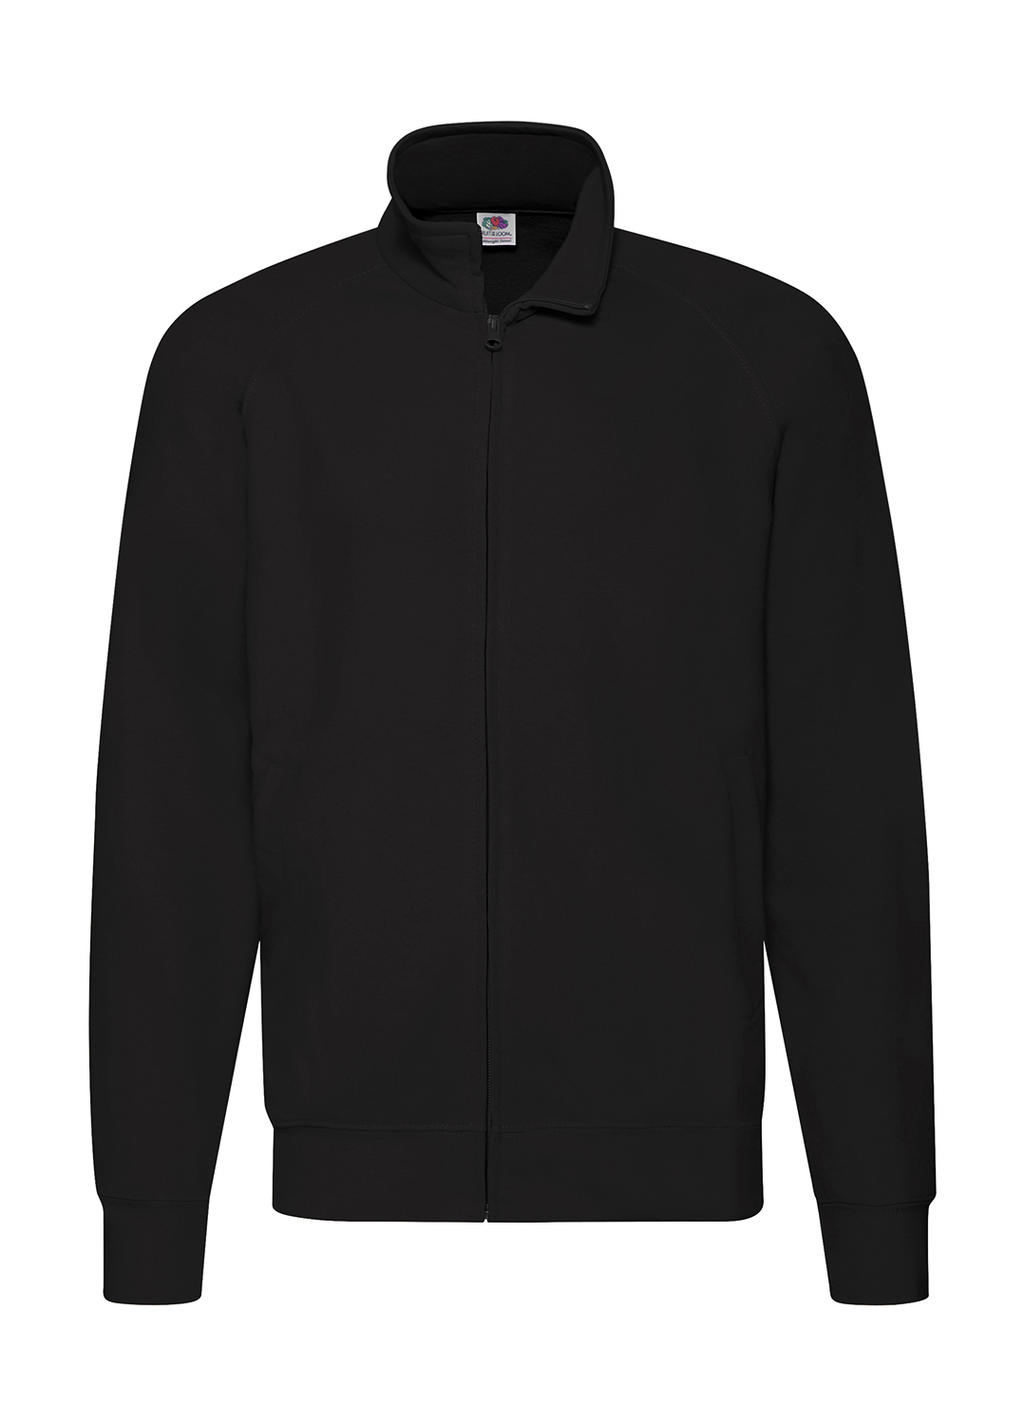  Lightweight Sweat Jacket in Farbe Black